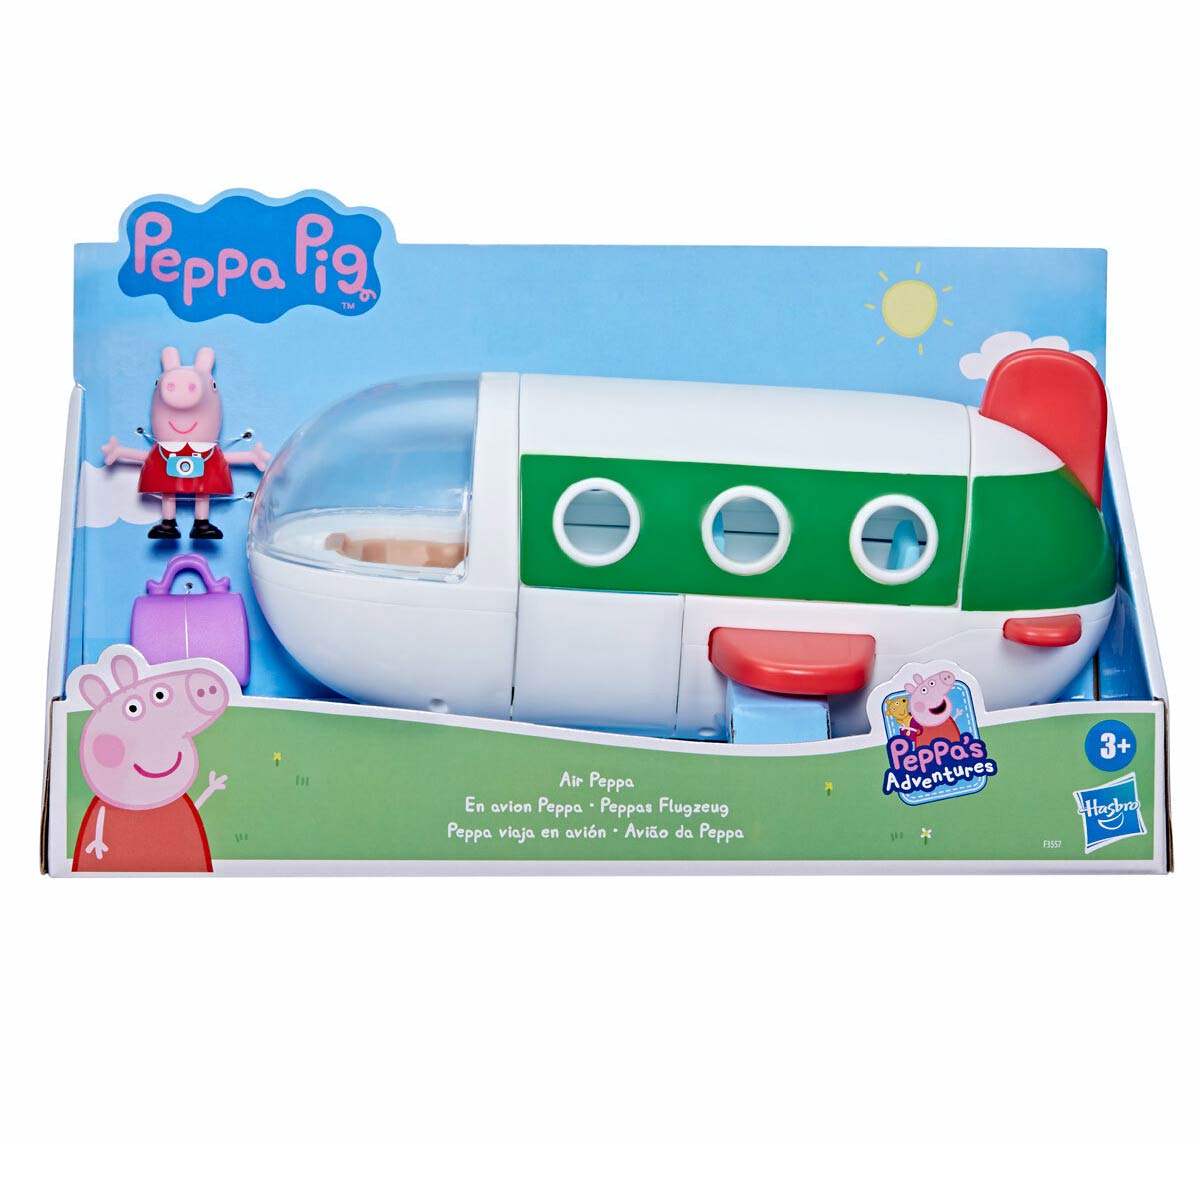 PEPPA PIG Juguetes Preescolar con Su Casa y Accesorios Peppa Pig